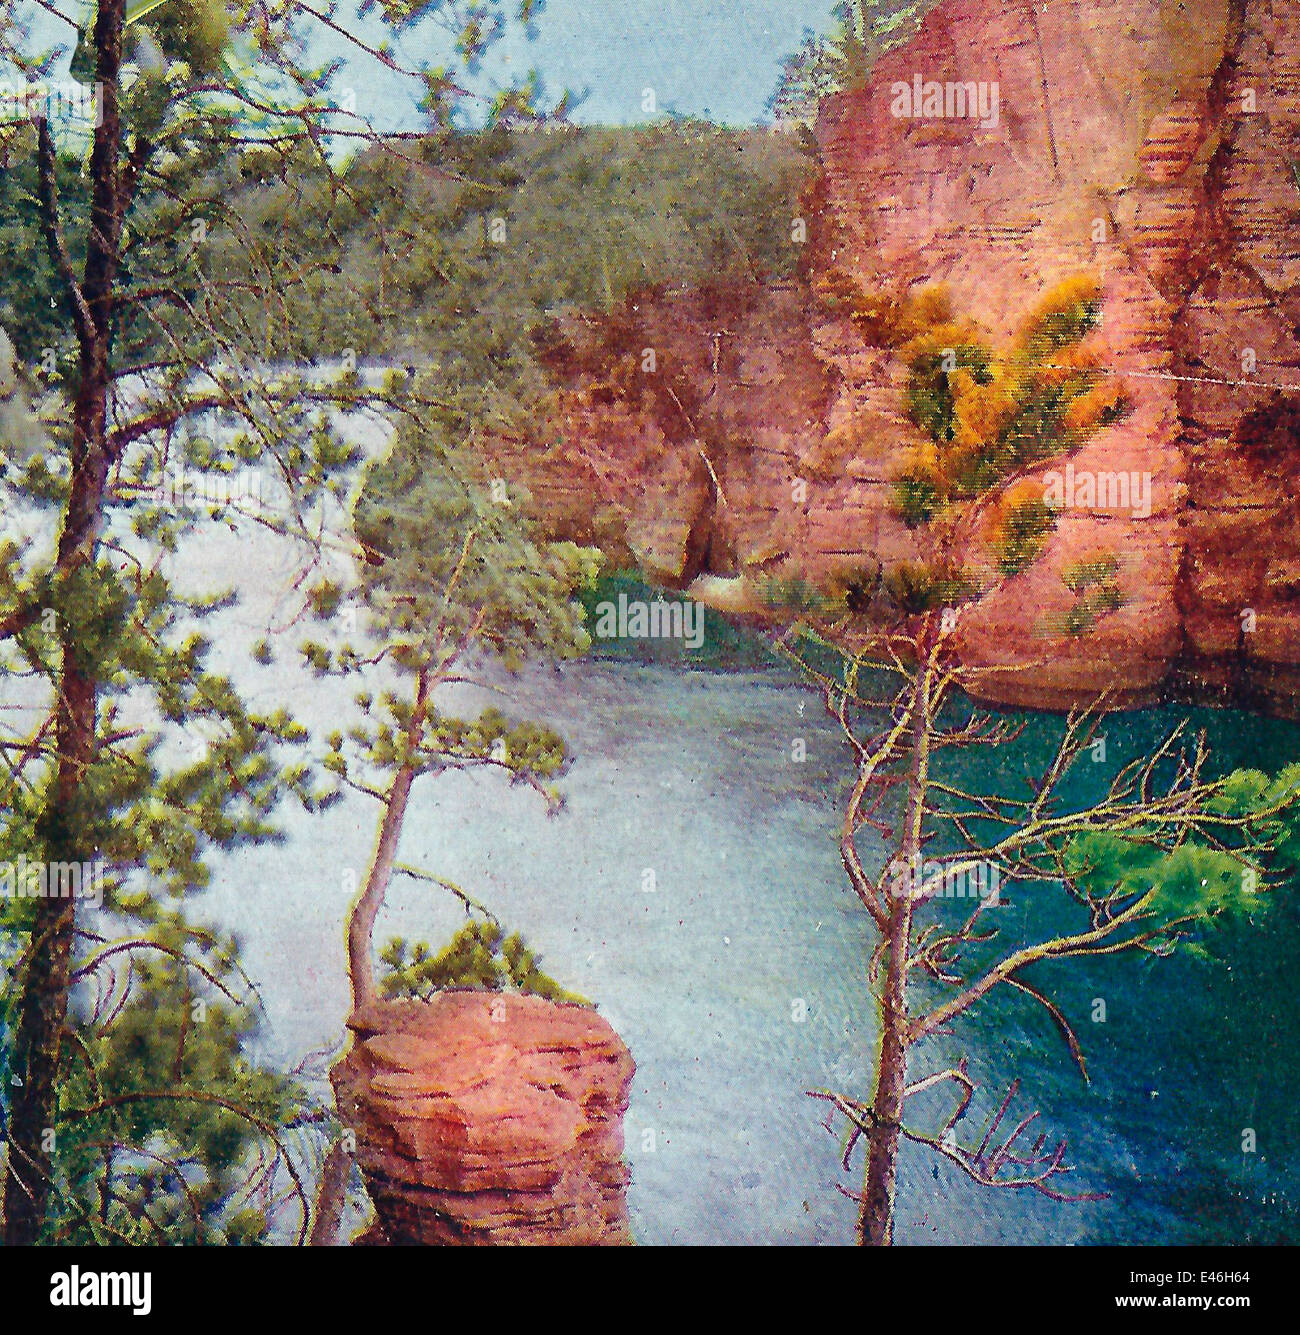 Romance Falaise et Chimney Rock, du Wisconsin Dells - vers 1900 Banque D'Images